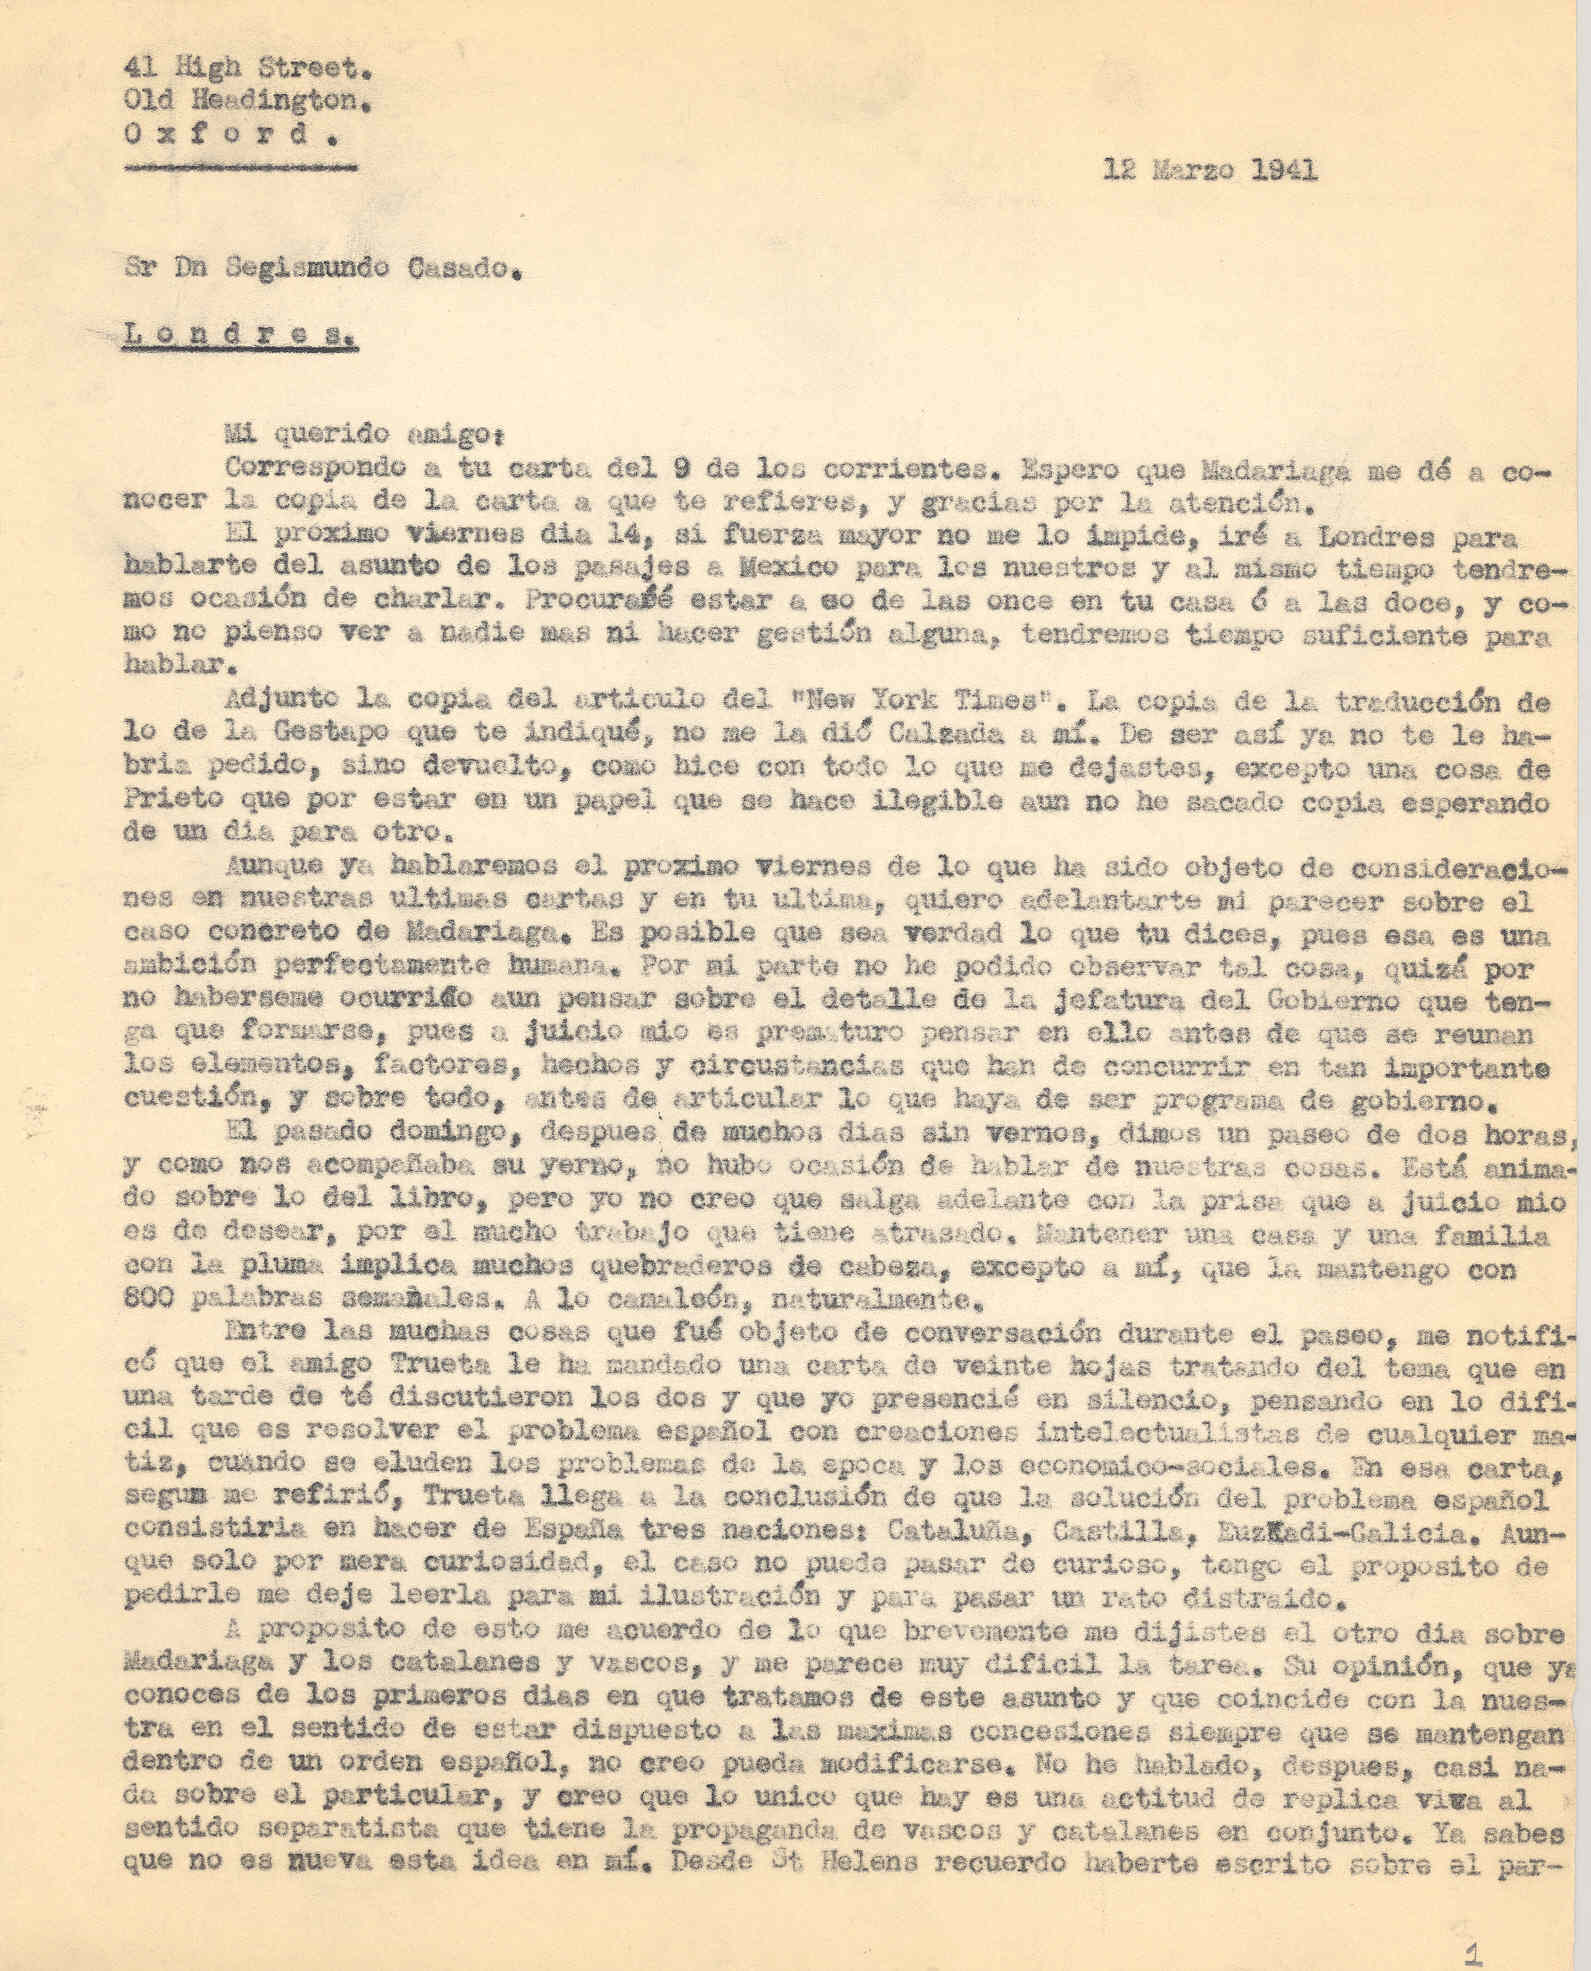 Carta a Segismundo Casado criticando la idea de solucionar el problema español dividiendo a España en naciones.